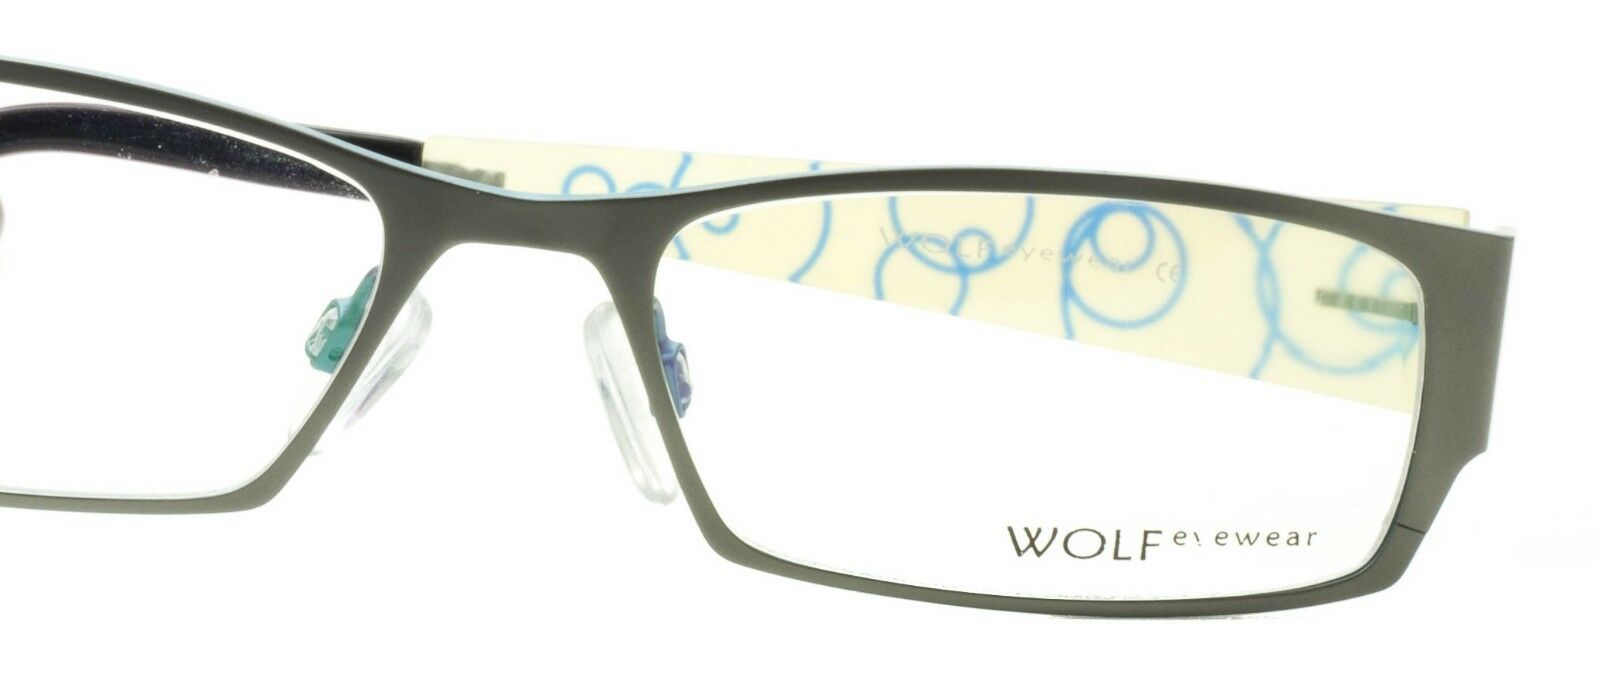 WOLF EYEWEAR W366 C059 FRAMES RX Optical Glasses Eyeglasses Eyewear New-TRUSTED